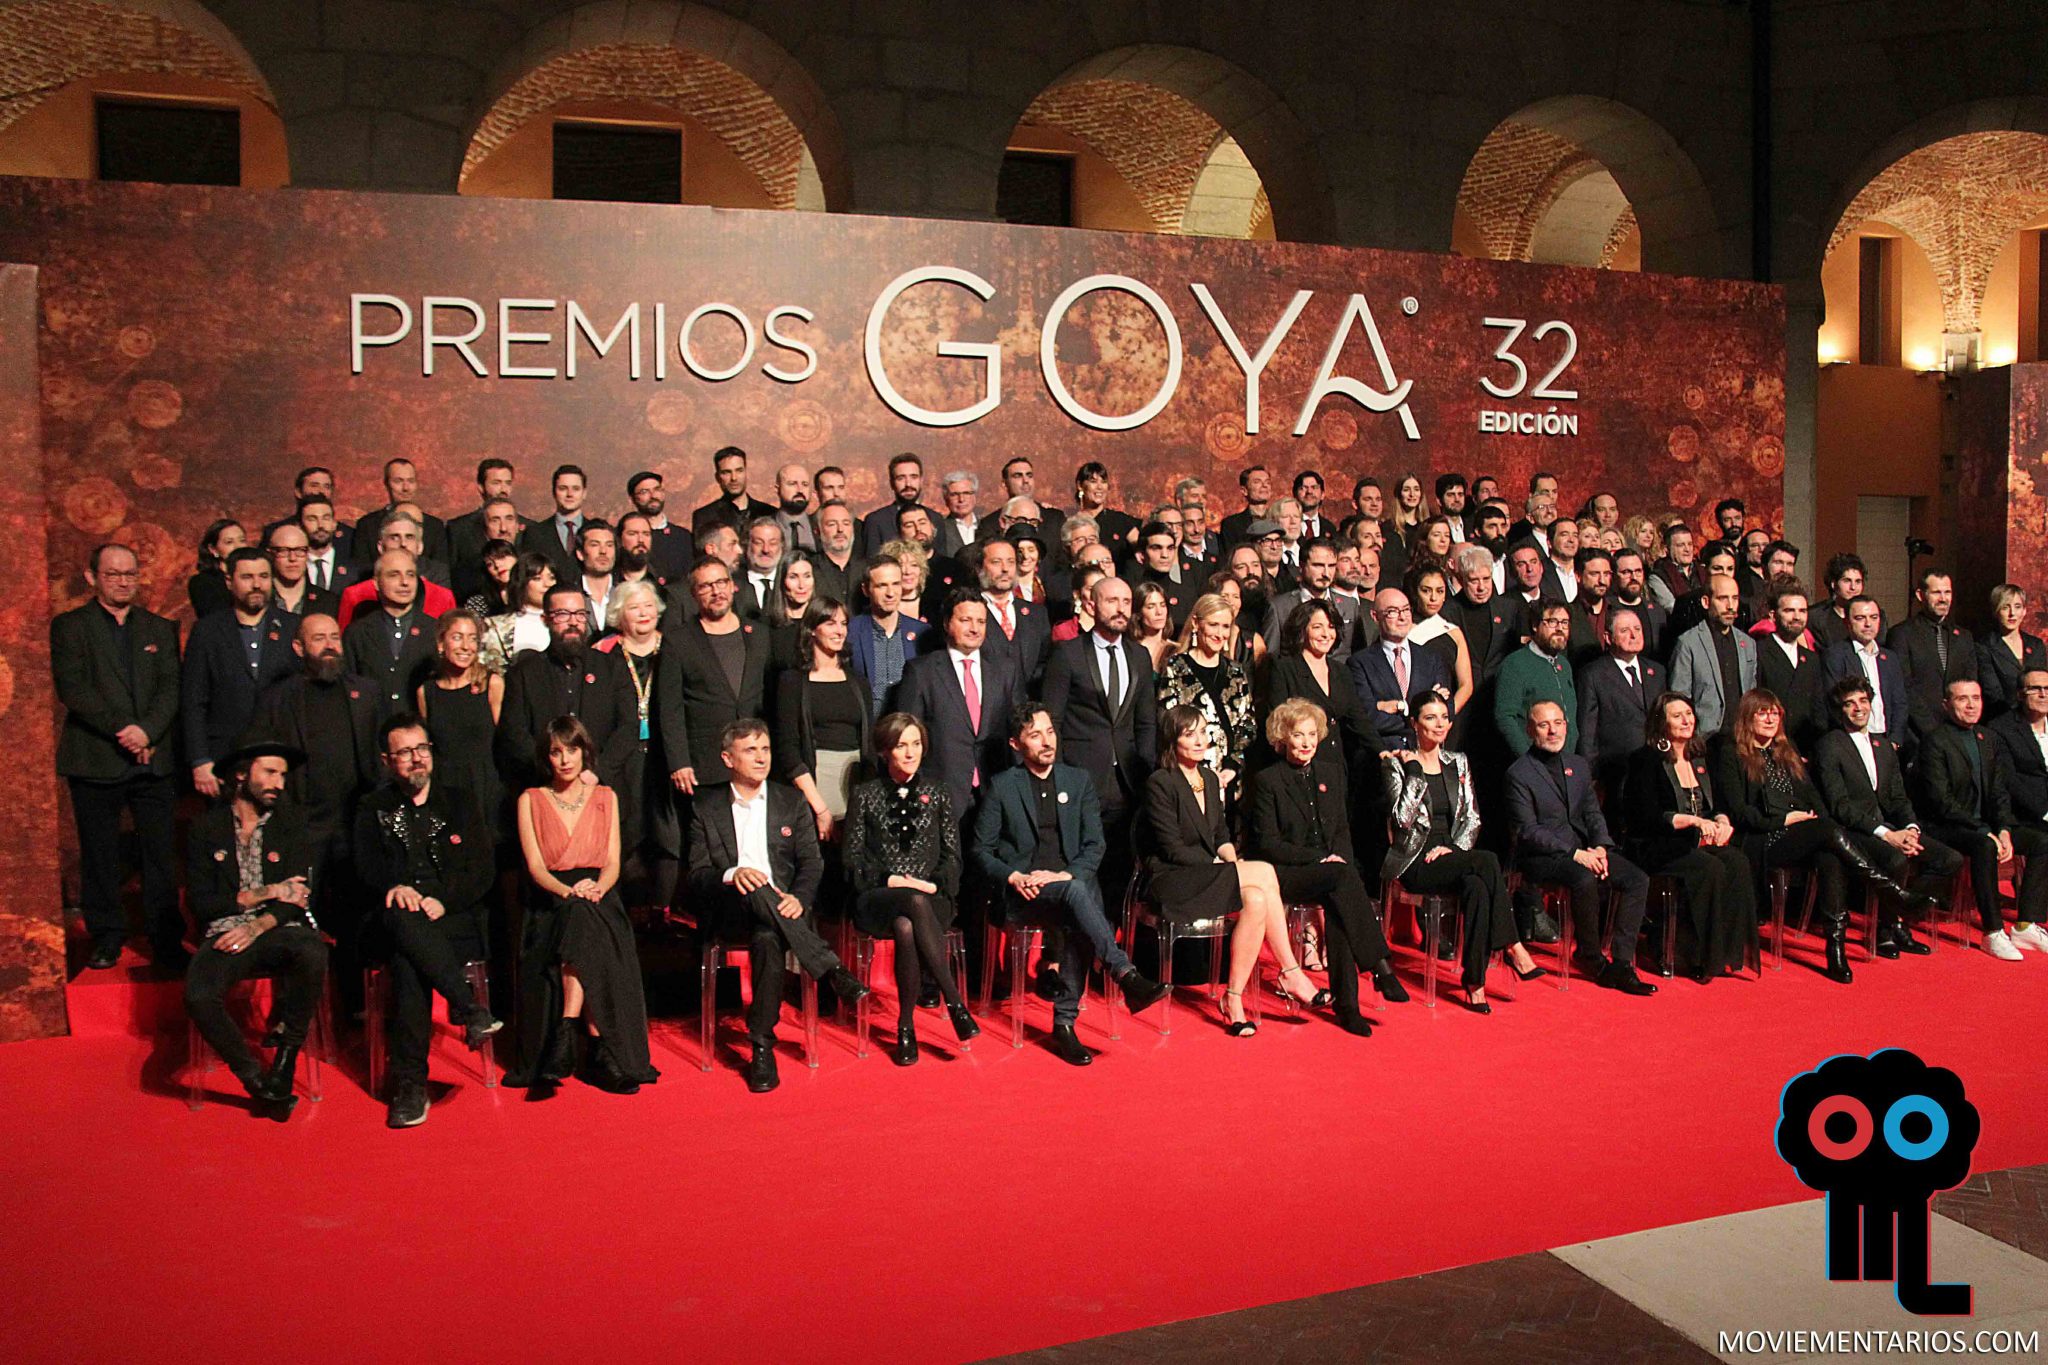 Estuvimos presentes en el encuentro de nominados de los Premios Goya